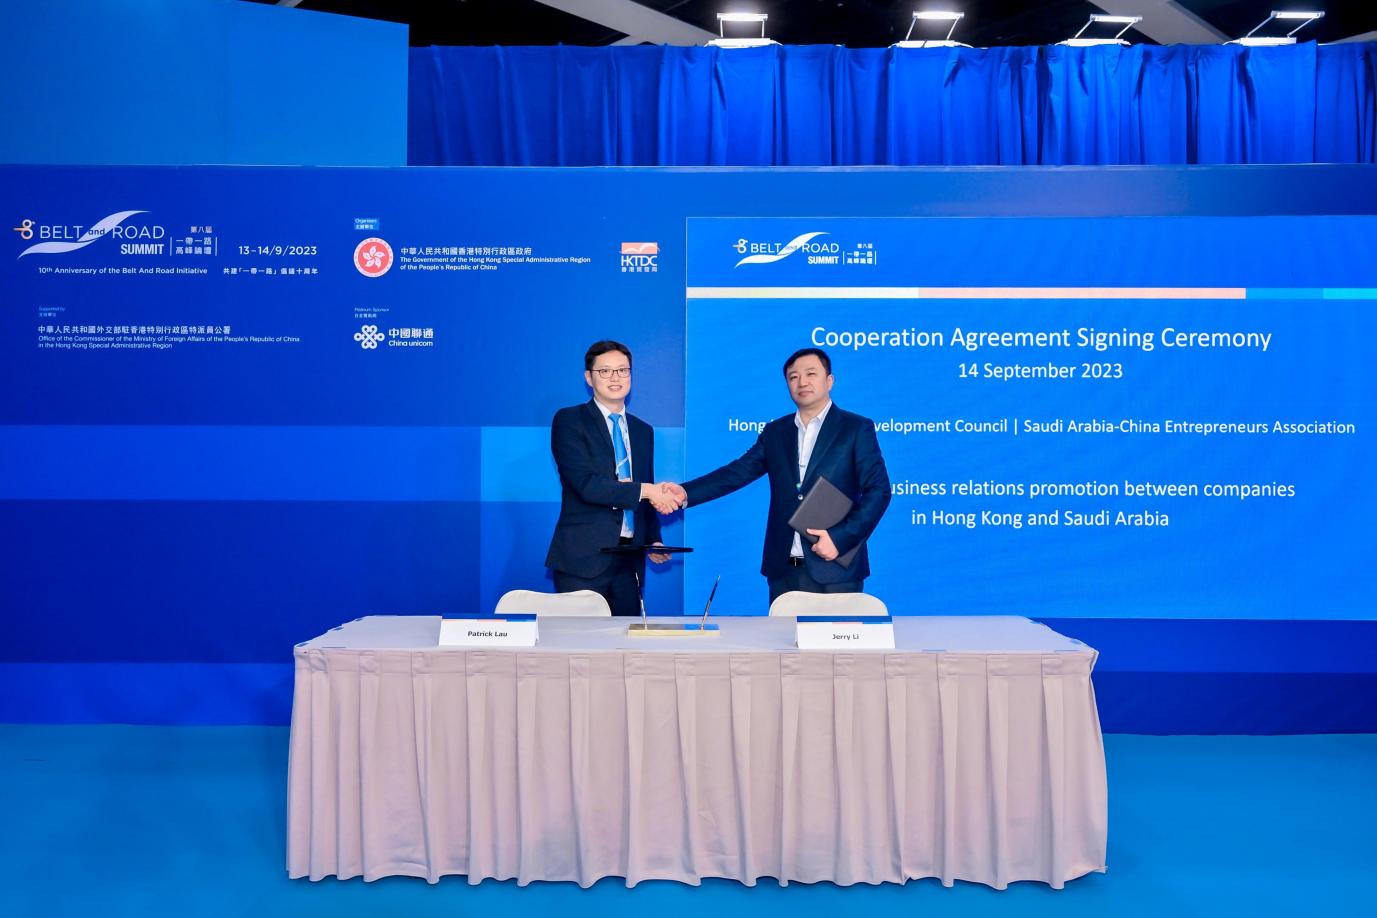 Jerry Li signe un protocole d'accord avec Patrick Lau, directeur exécutif adjoint du Hong Kong Trade Development Council